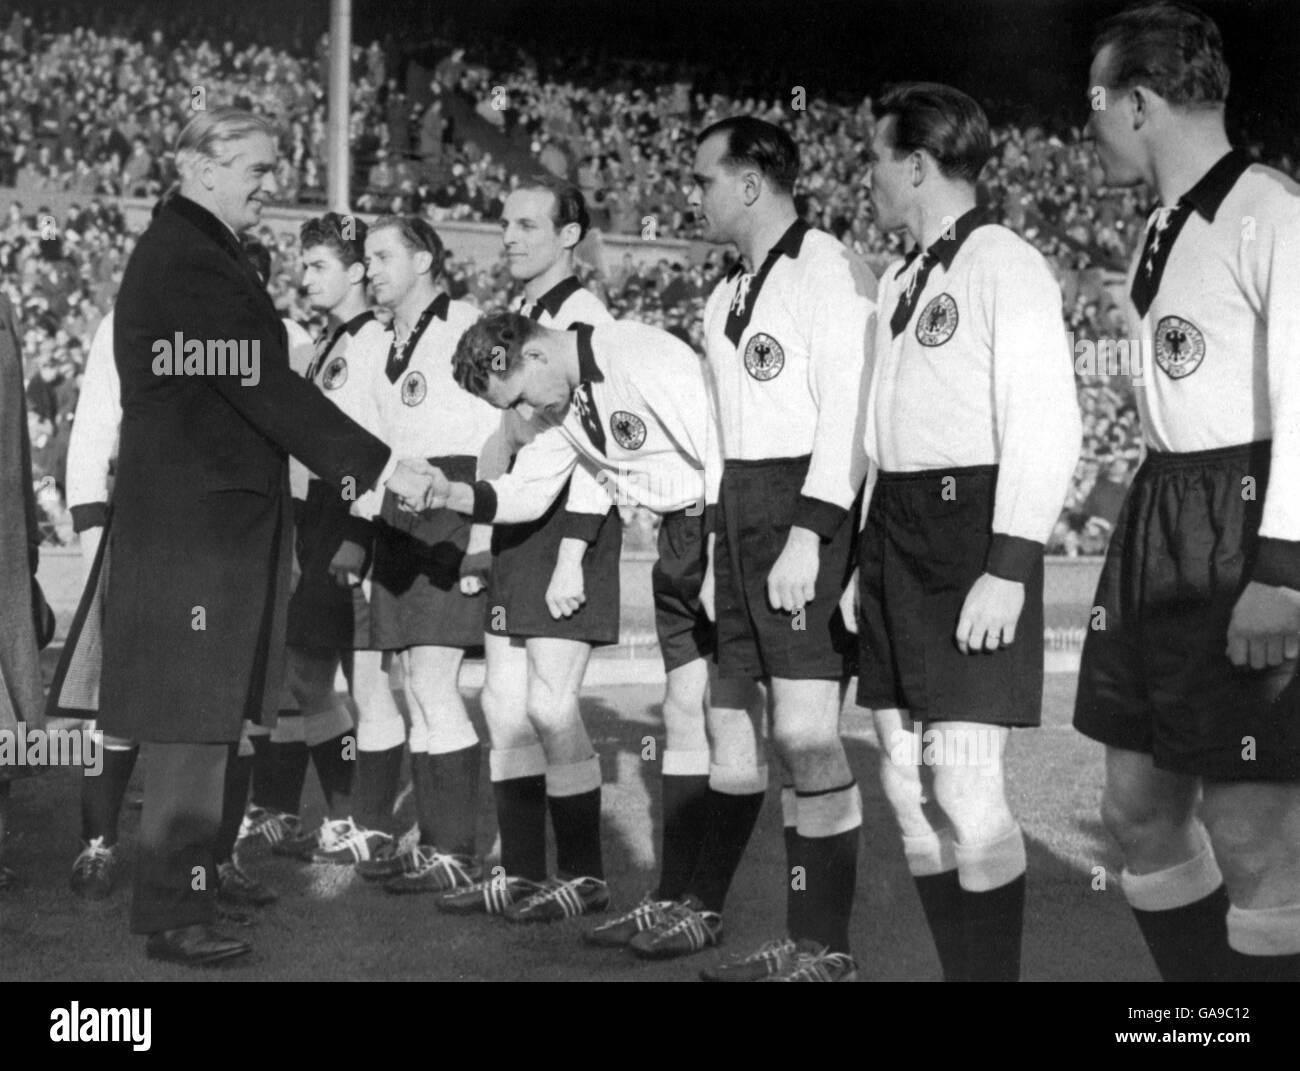 Calcio - amichevole - Inghilterra / Germania occidentale. Il ministro degli Esteri britannico Sir Anthony Eden viene presentato ai giocatori della Germania occidentale prima della partita Foto Stock